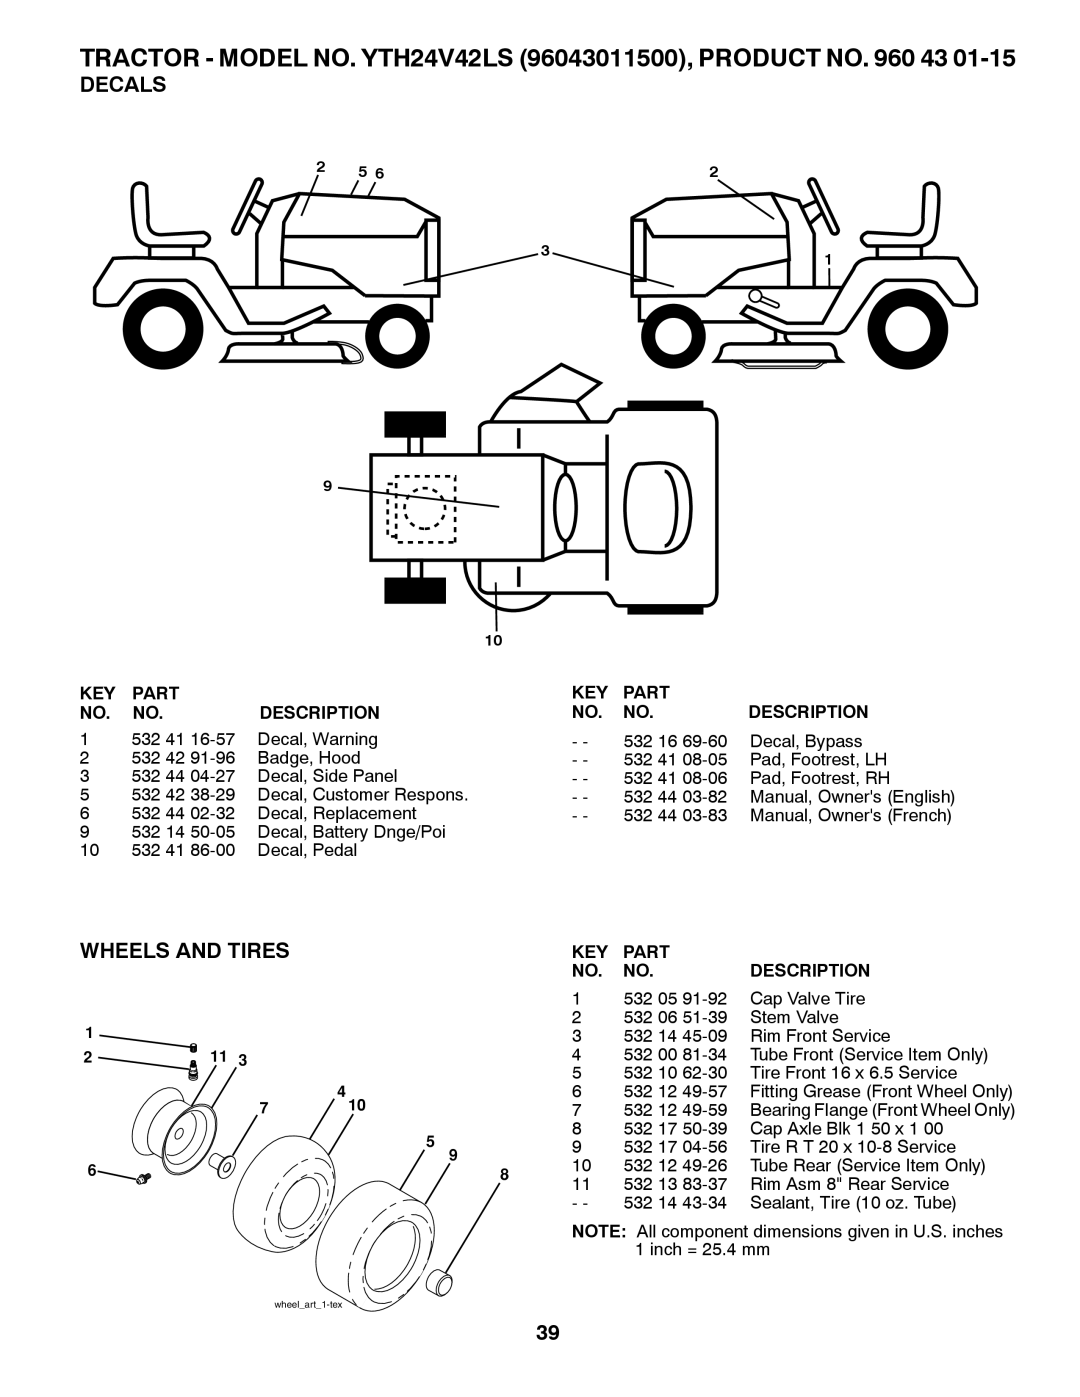 Husqvarna Decals, Wheels And Tires, TRACTOR - MODEL NO. YTH24V42LS 96043011500, PRODUCT NO. 960 43, Part, Description 